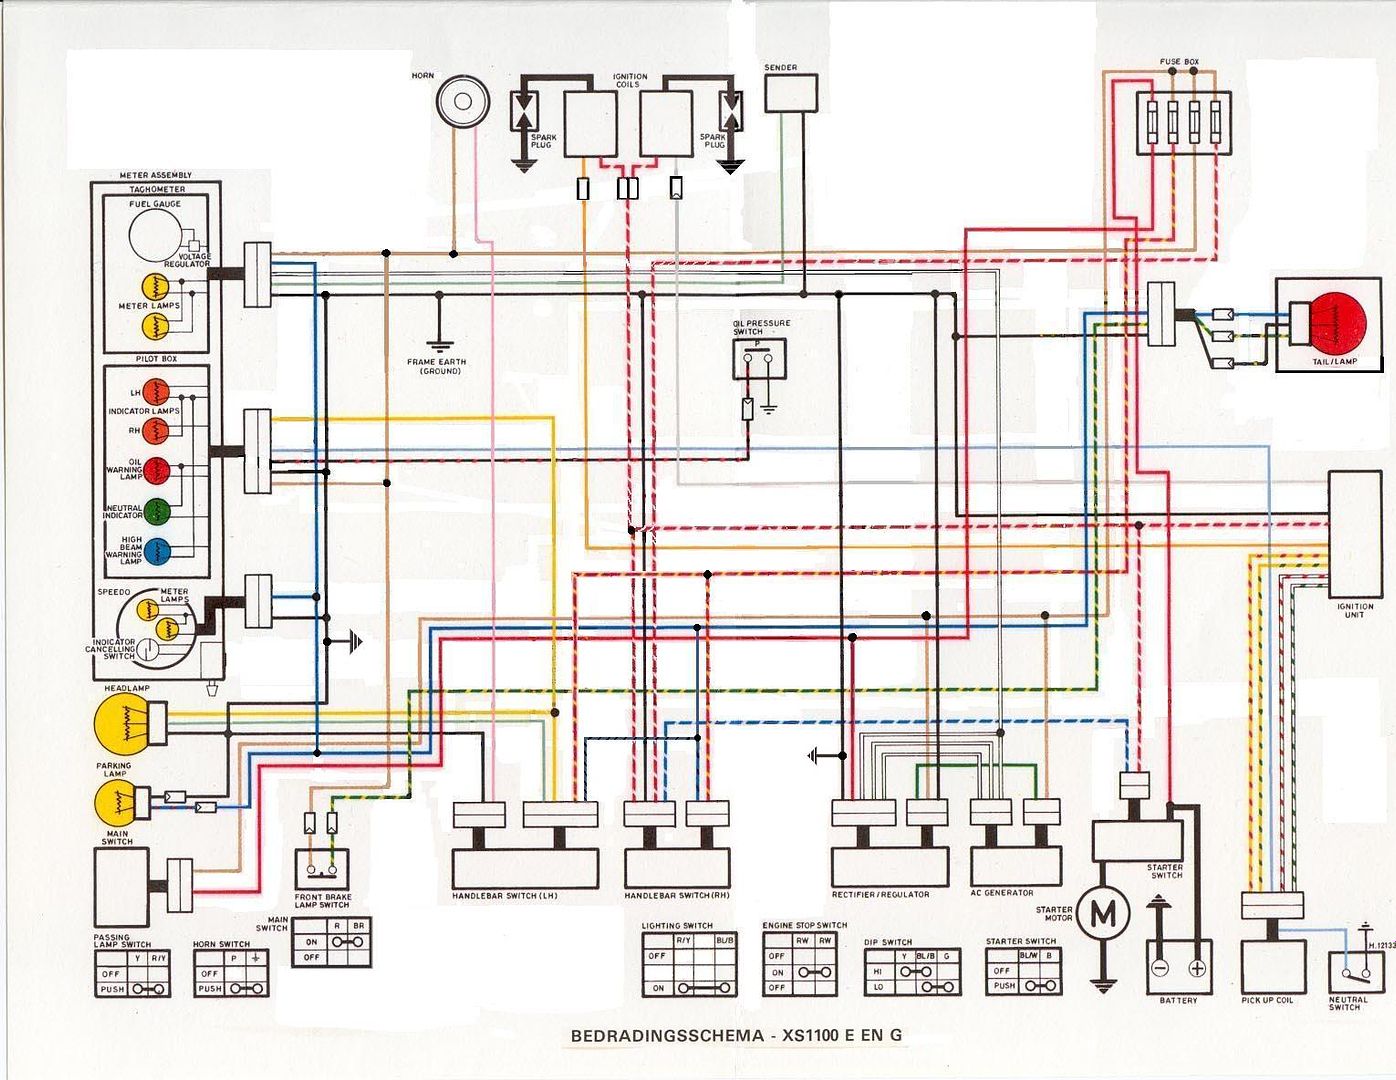 ysr50 wiring diagram